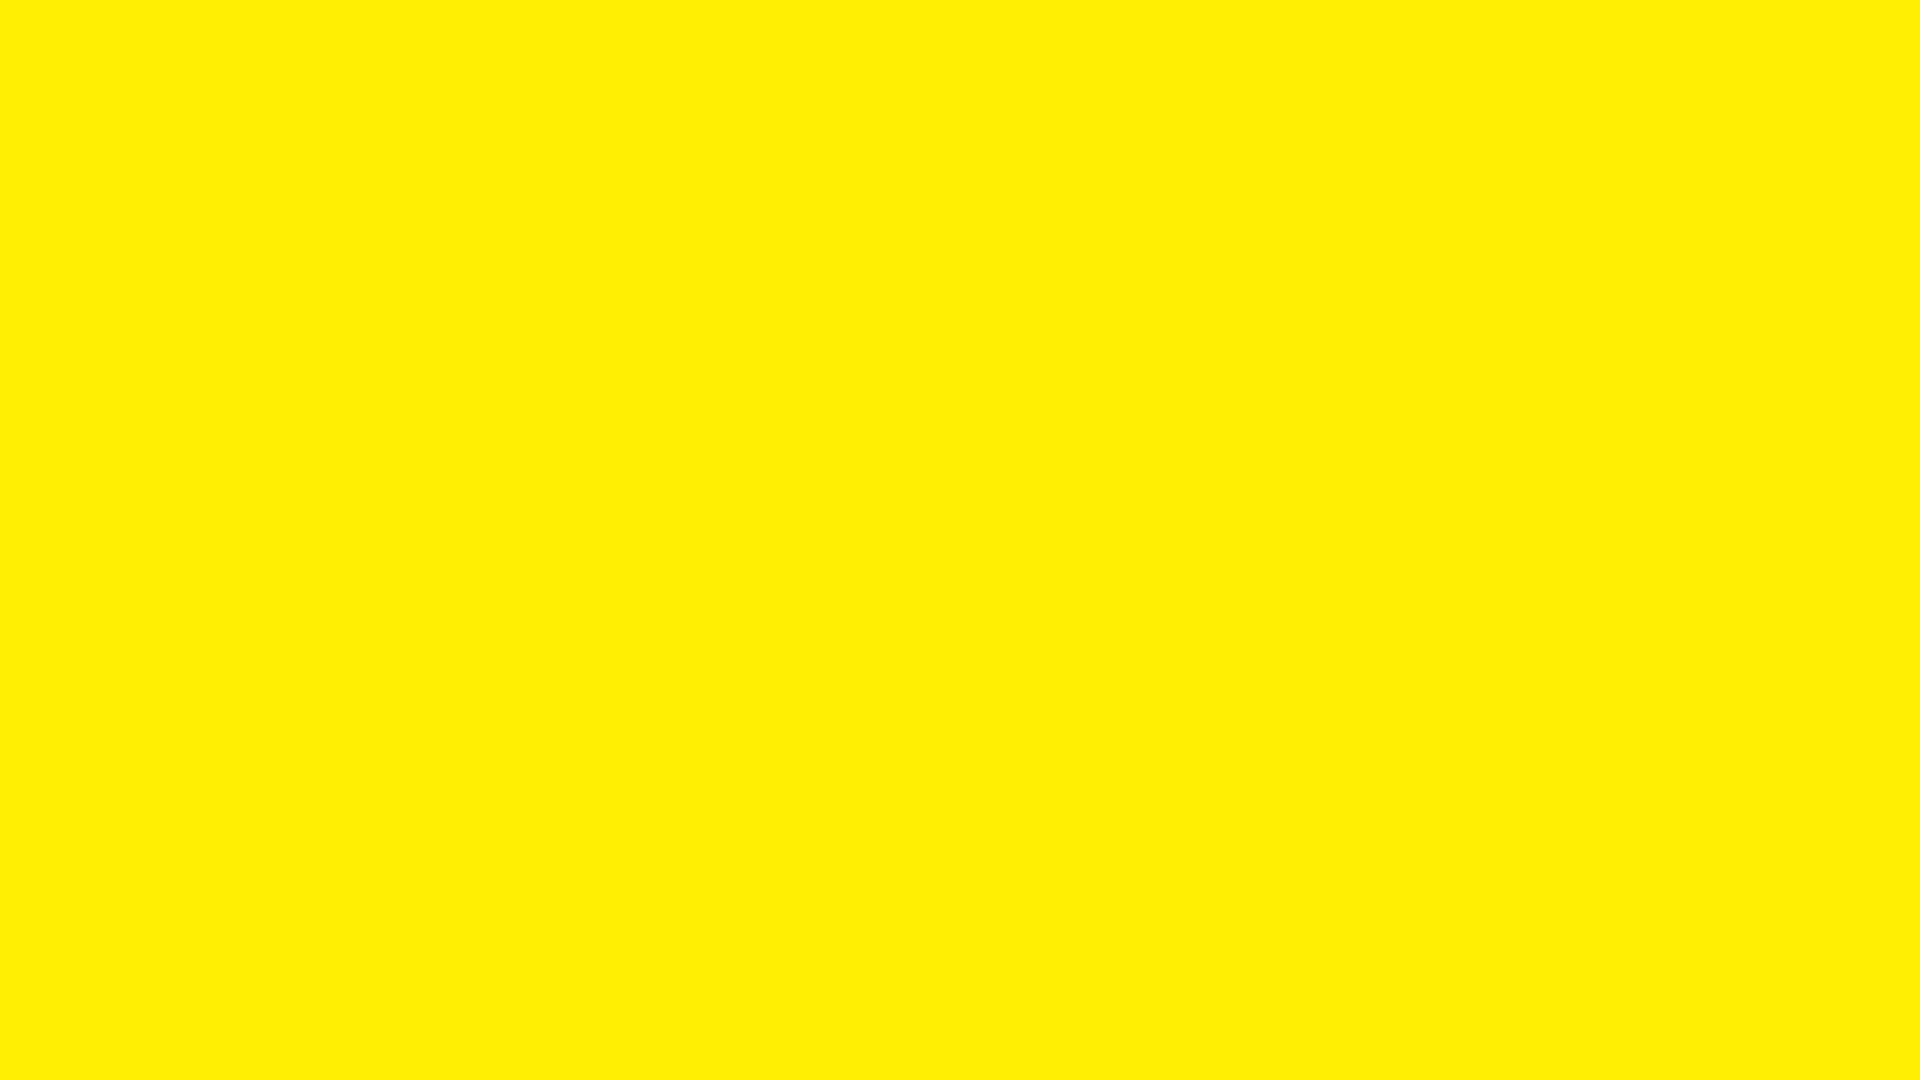 Aesthetic Yellow Wallpaper Widescreen > Flip Wallpaper > Download